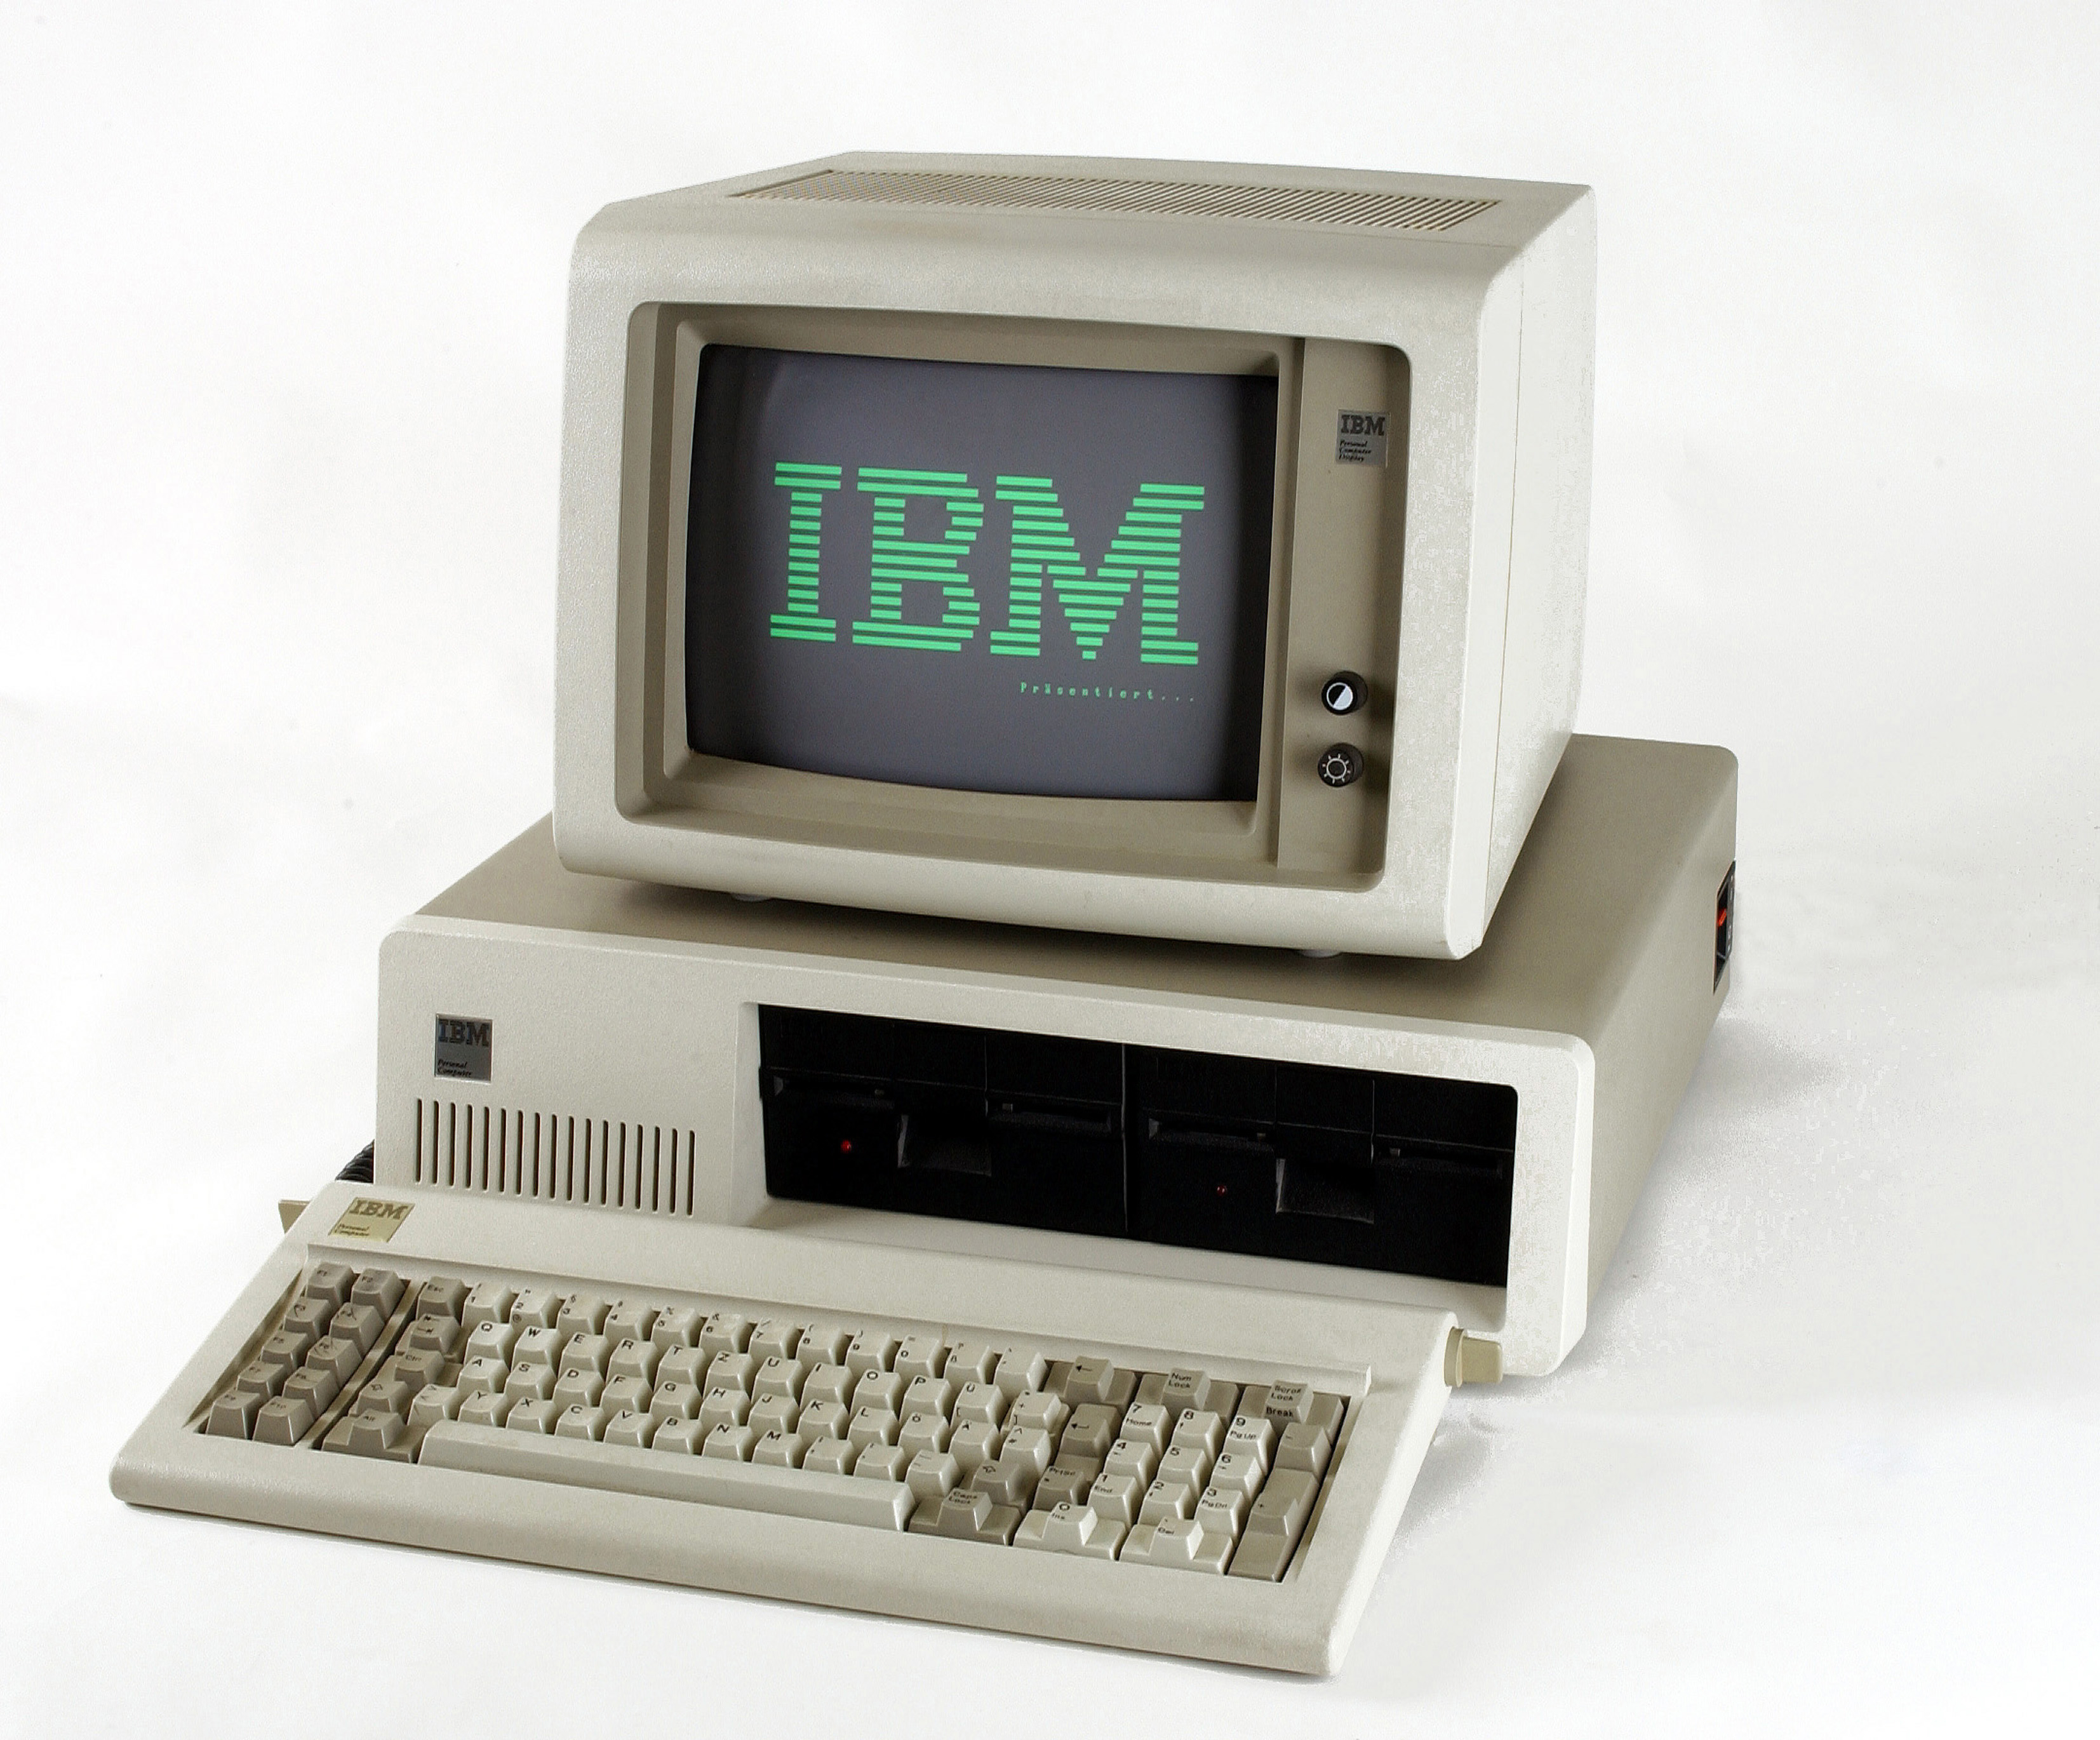 8 персональные компьютеры. IBM PC или IBM 5150. IBM компьютер 1981. Микрокомпьютер IBM PC 1981. ПК IBM 5150.